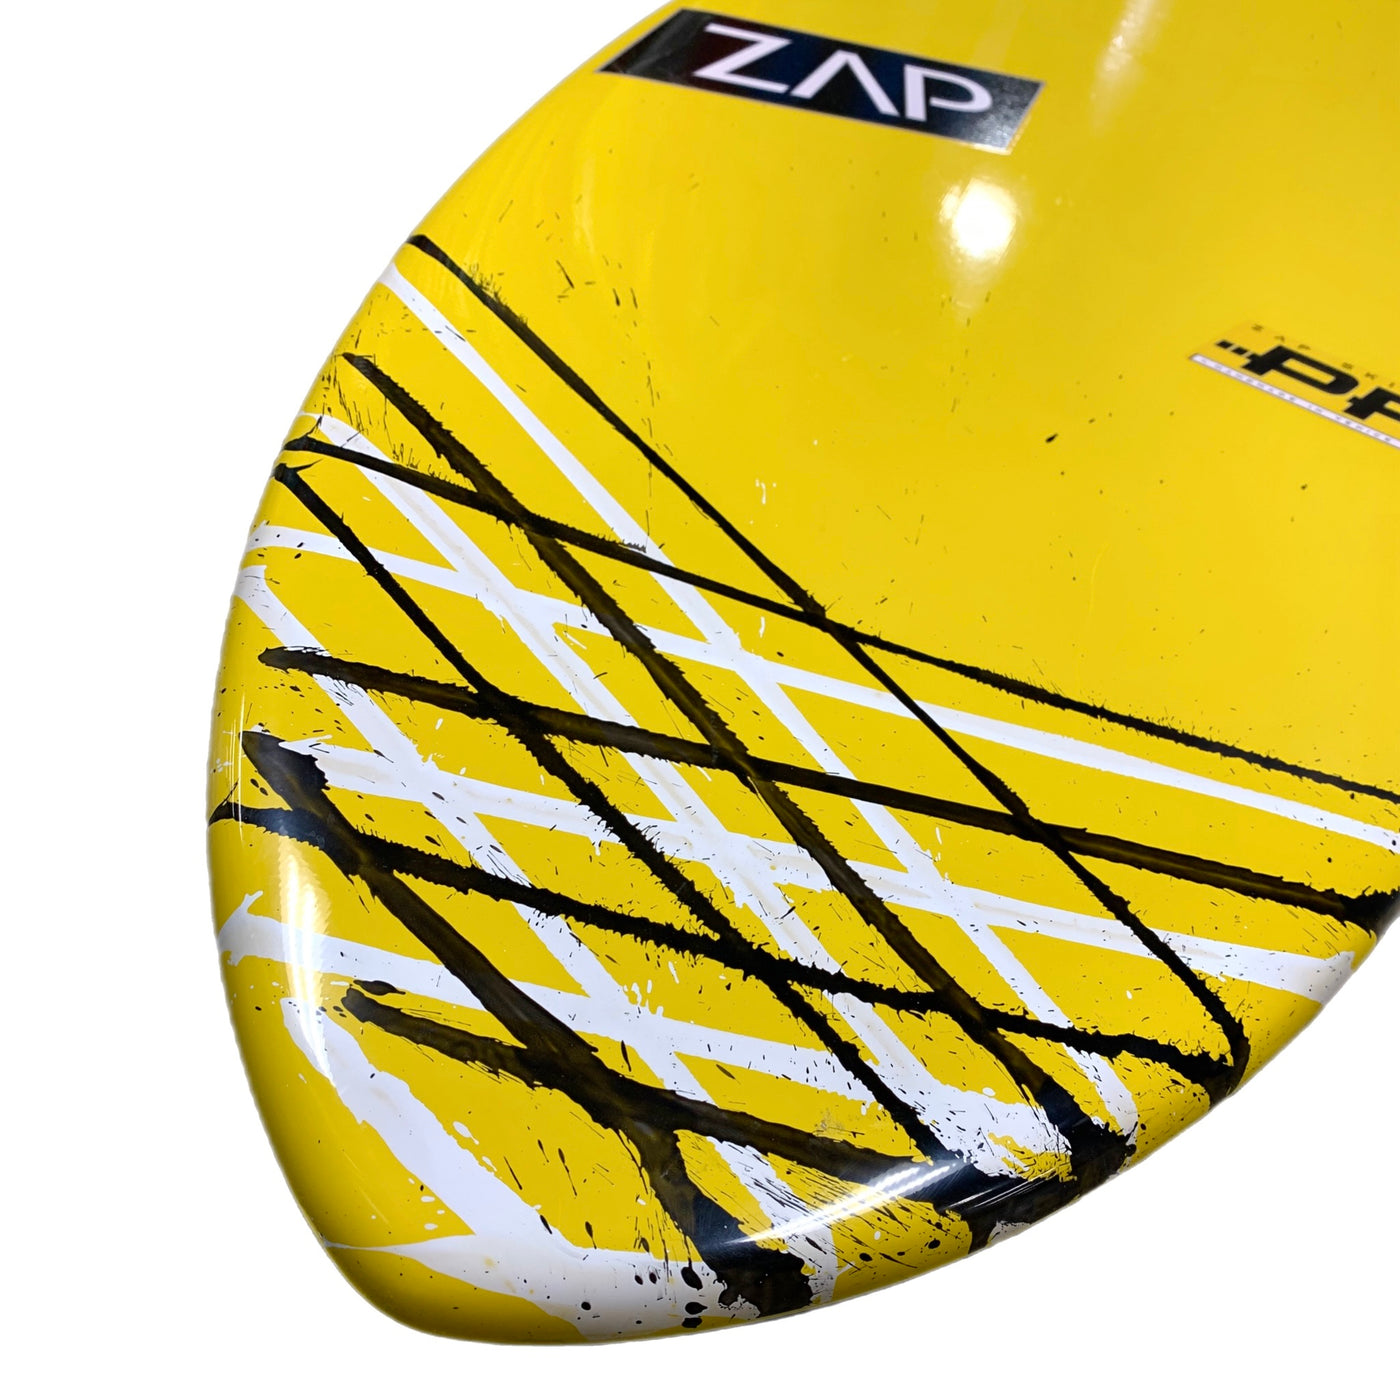 Zap Large Pro 54" Skimboard Yellow